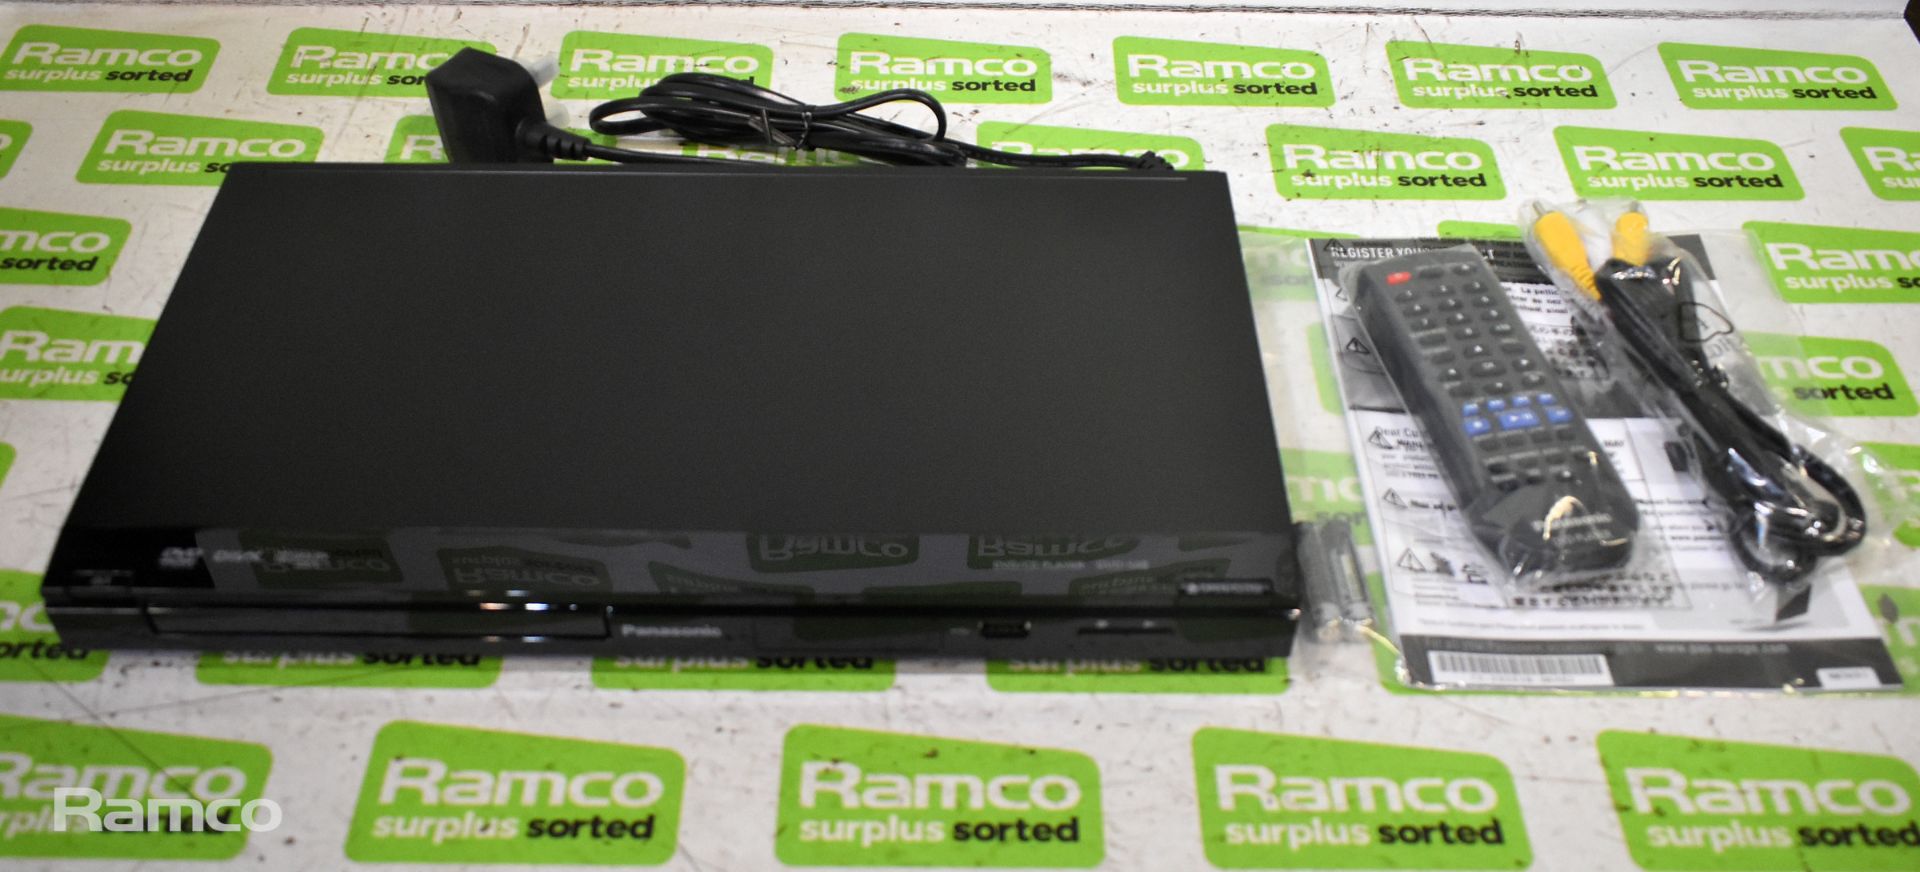 Samsung BD-D5100 blu-ray player, 2x Panasonic DVD-S48EB-K DVD/CD players - Black - Image 8 of 12